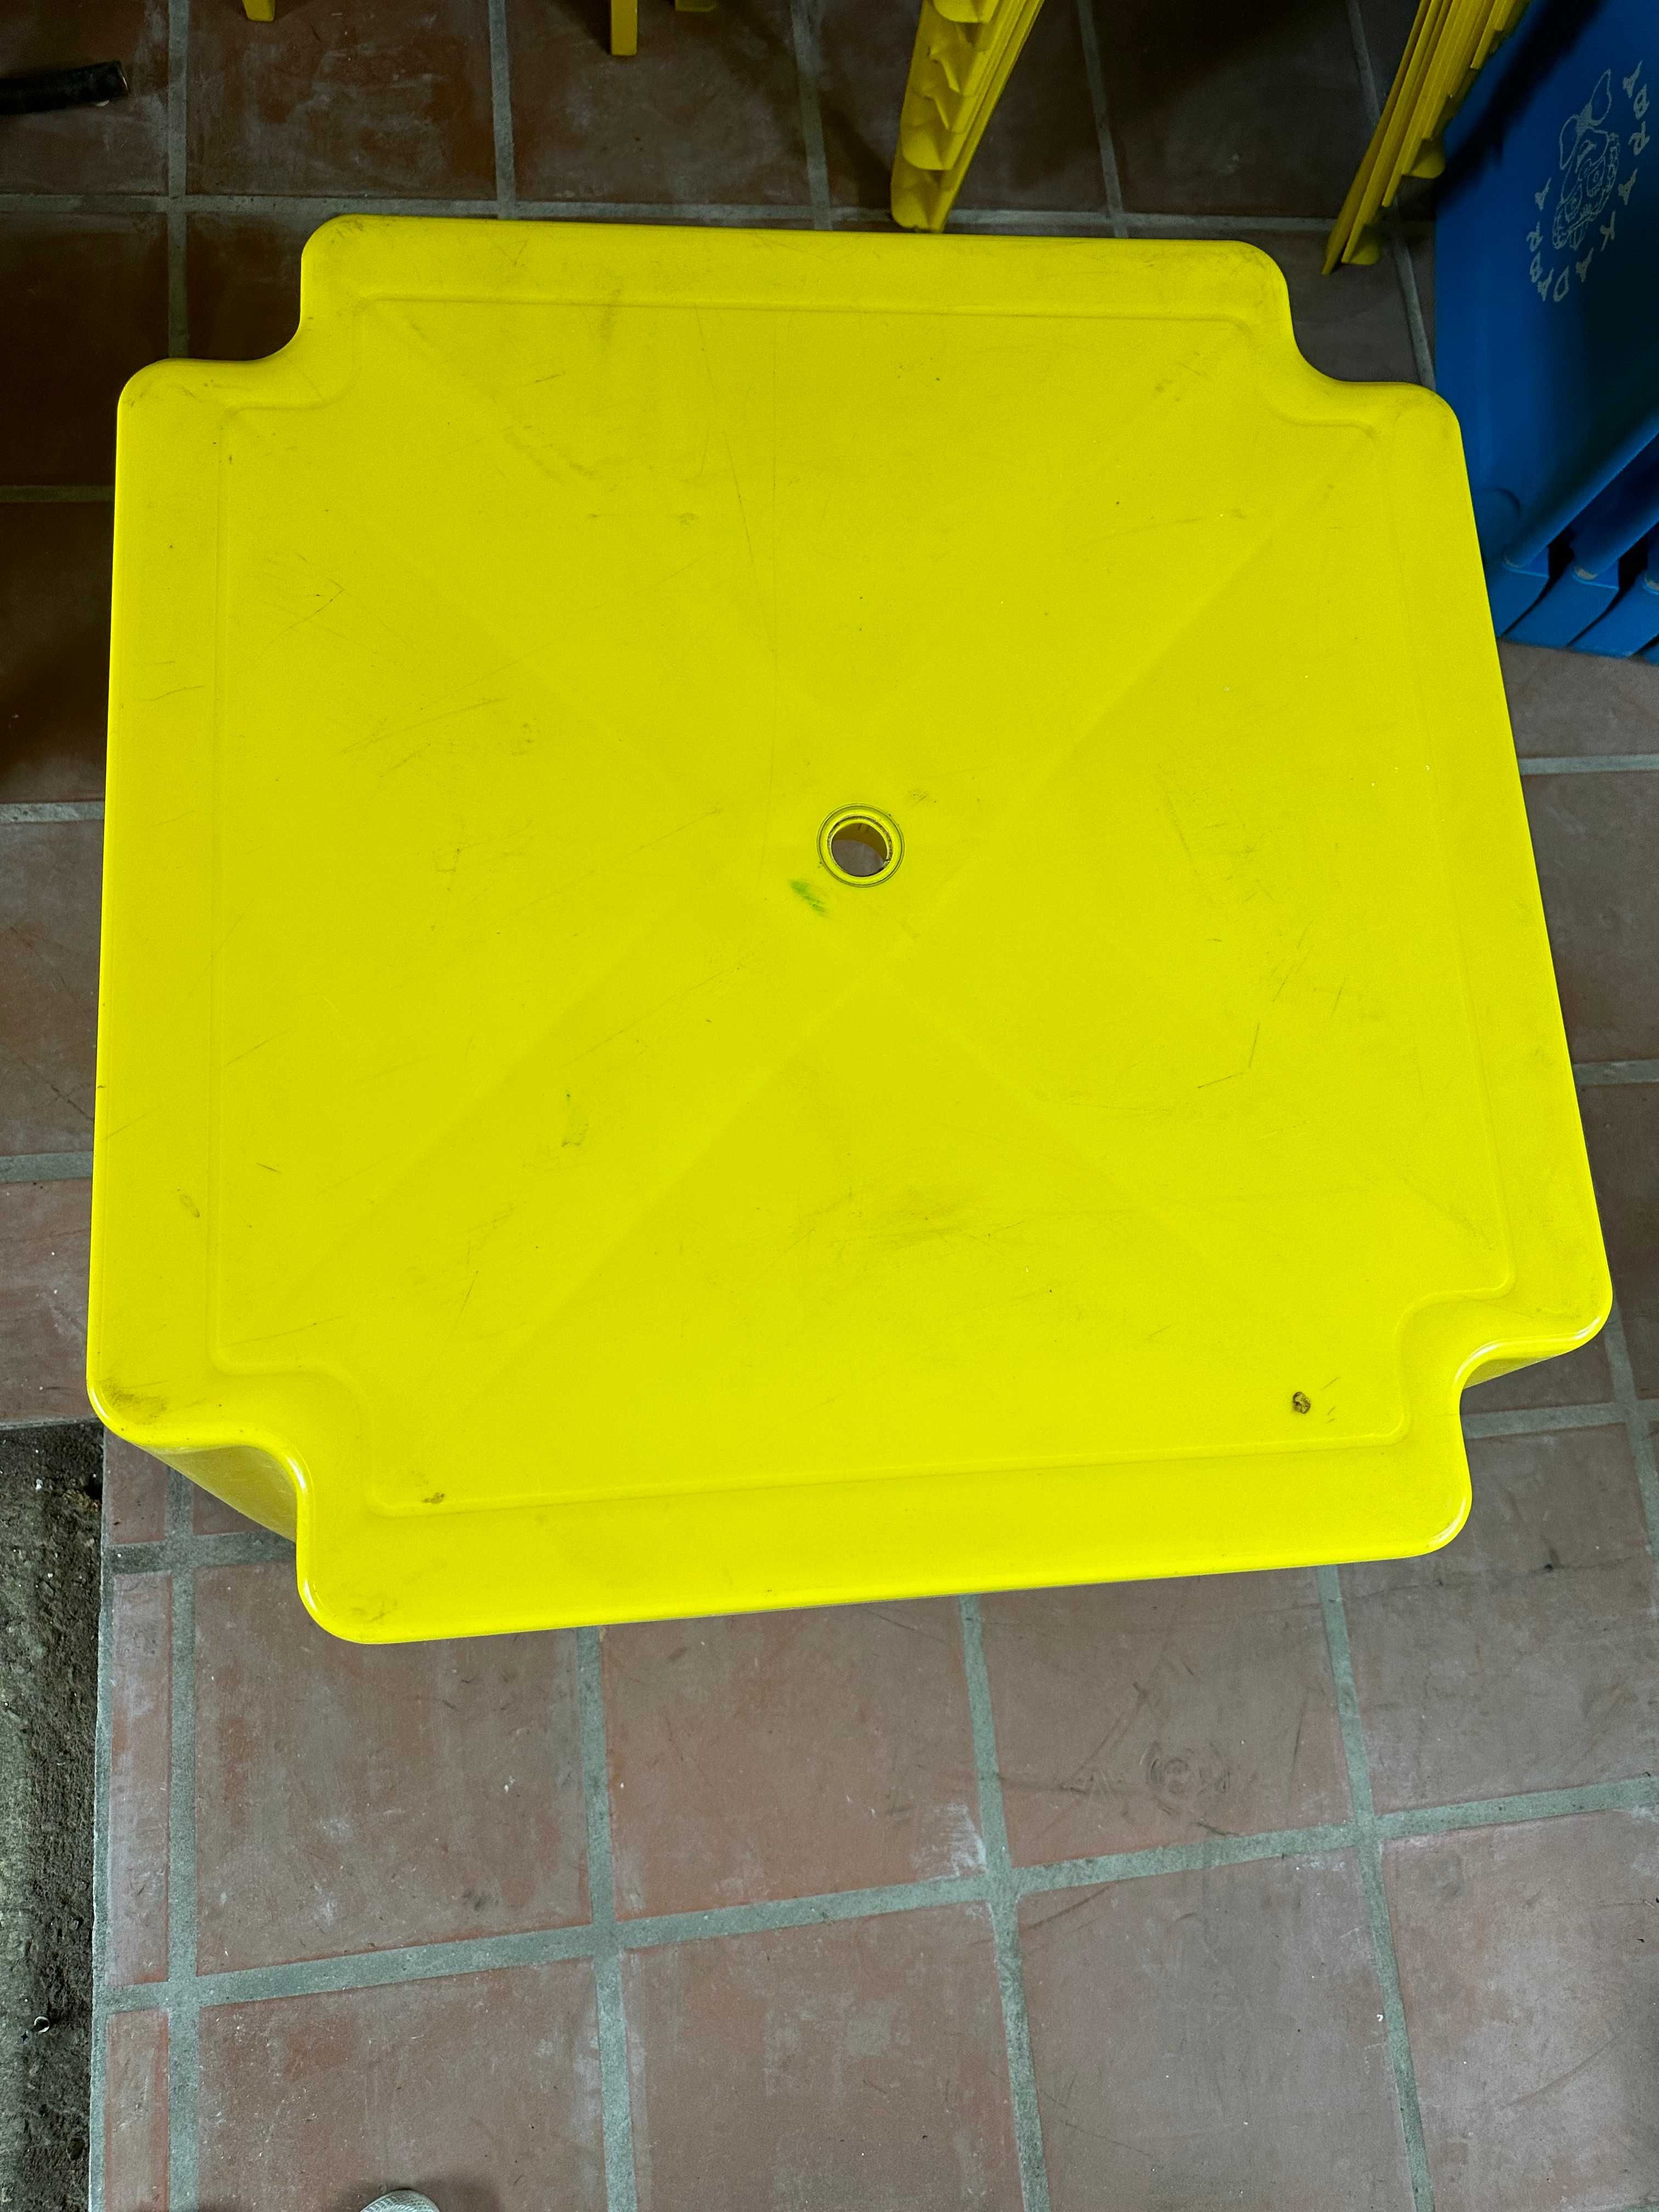 Mesas de plástico amarelas